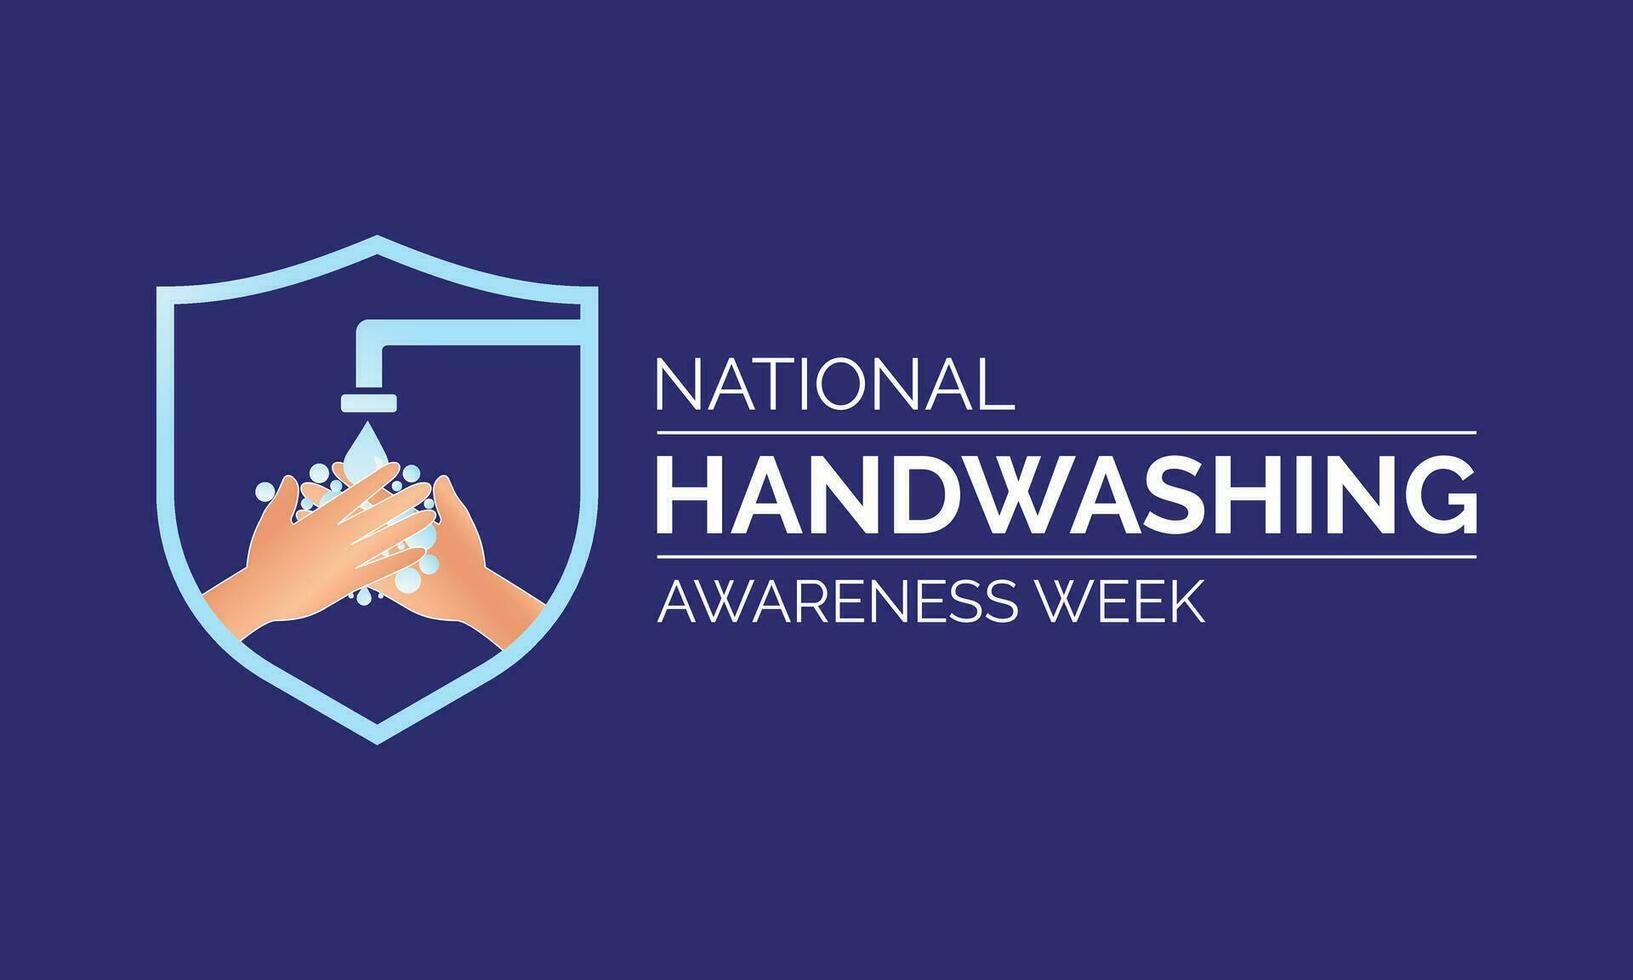 Vector illustration design concept of National Hand washing Awareness Week Banner, poster, card, background design.